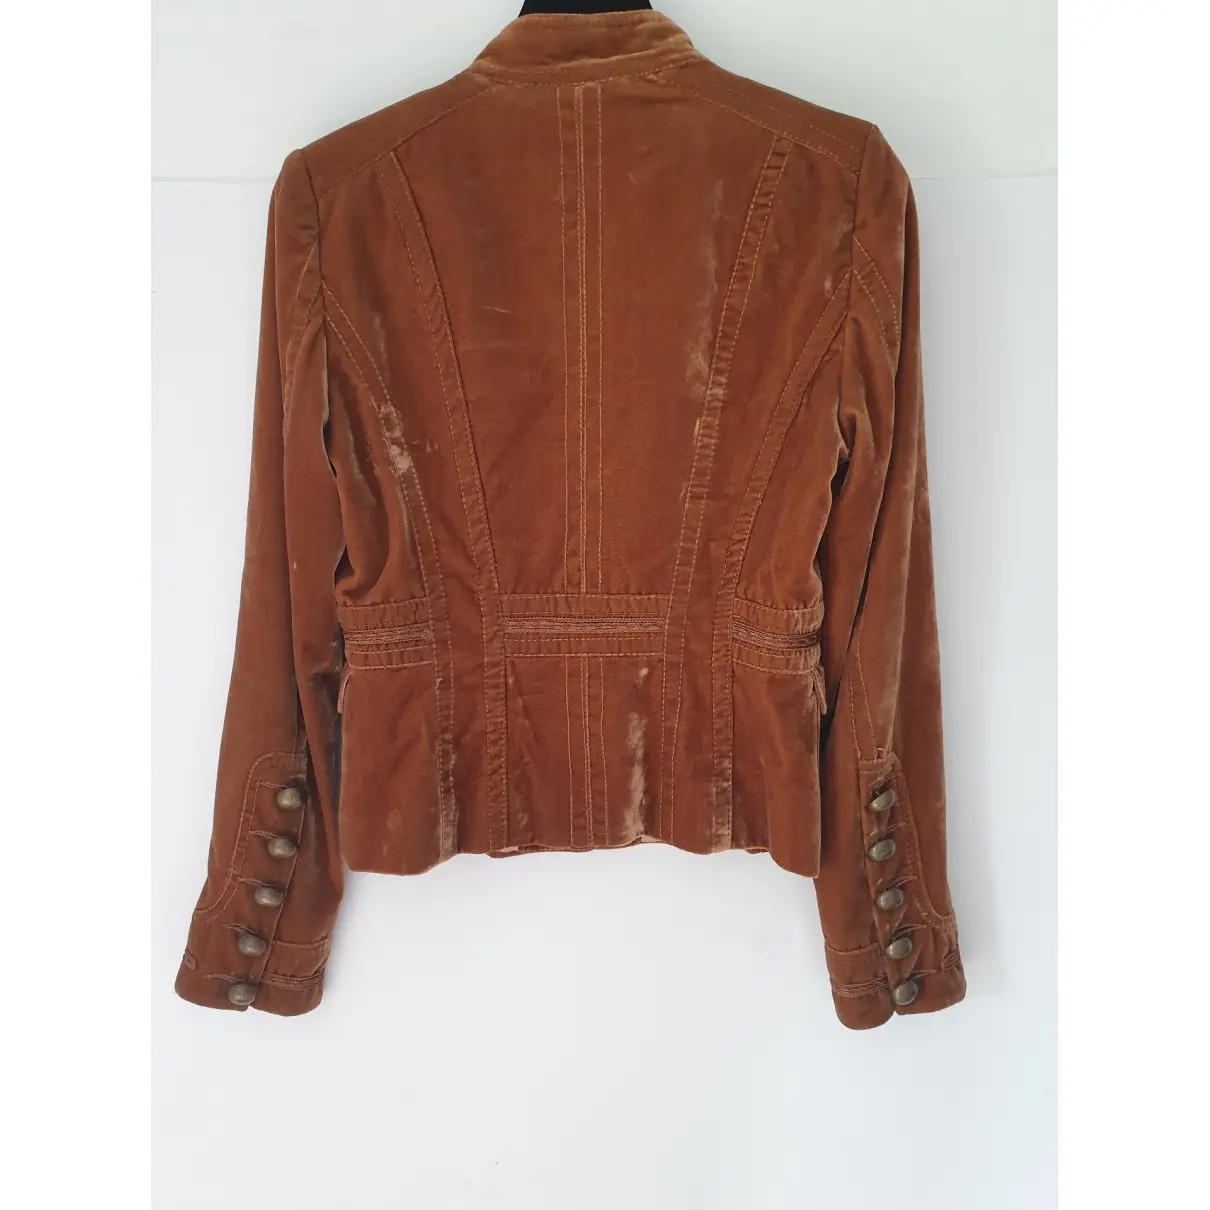 Buy Karen Millen Brown Viscose Jacket online